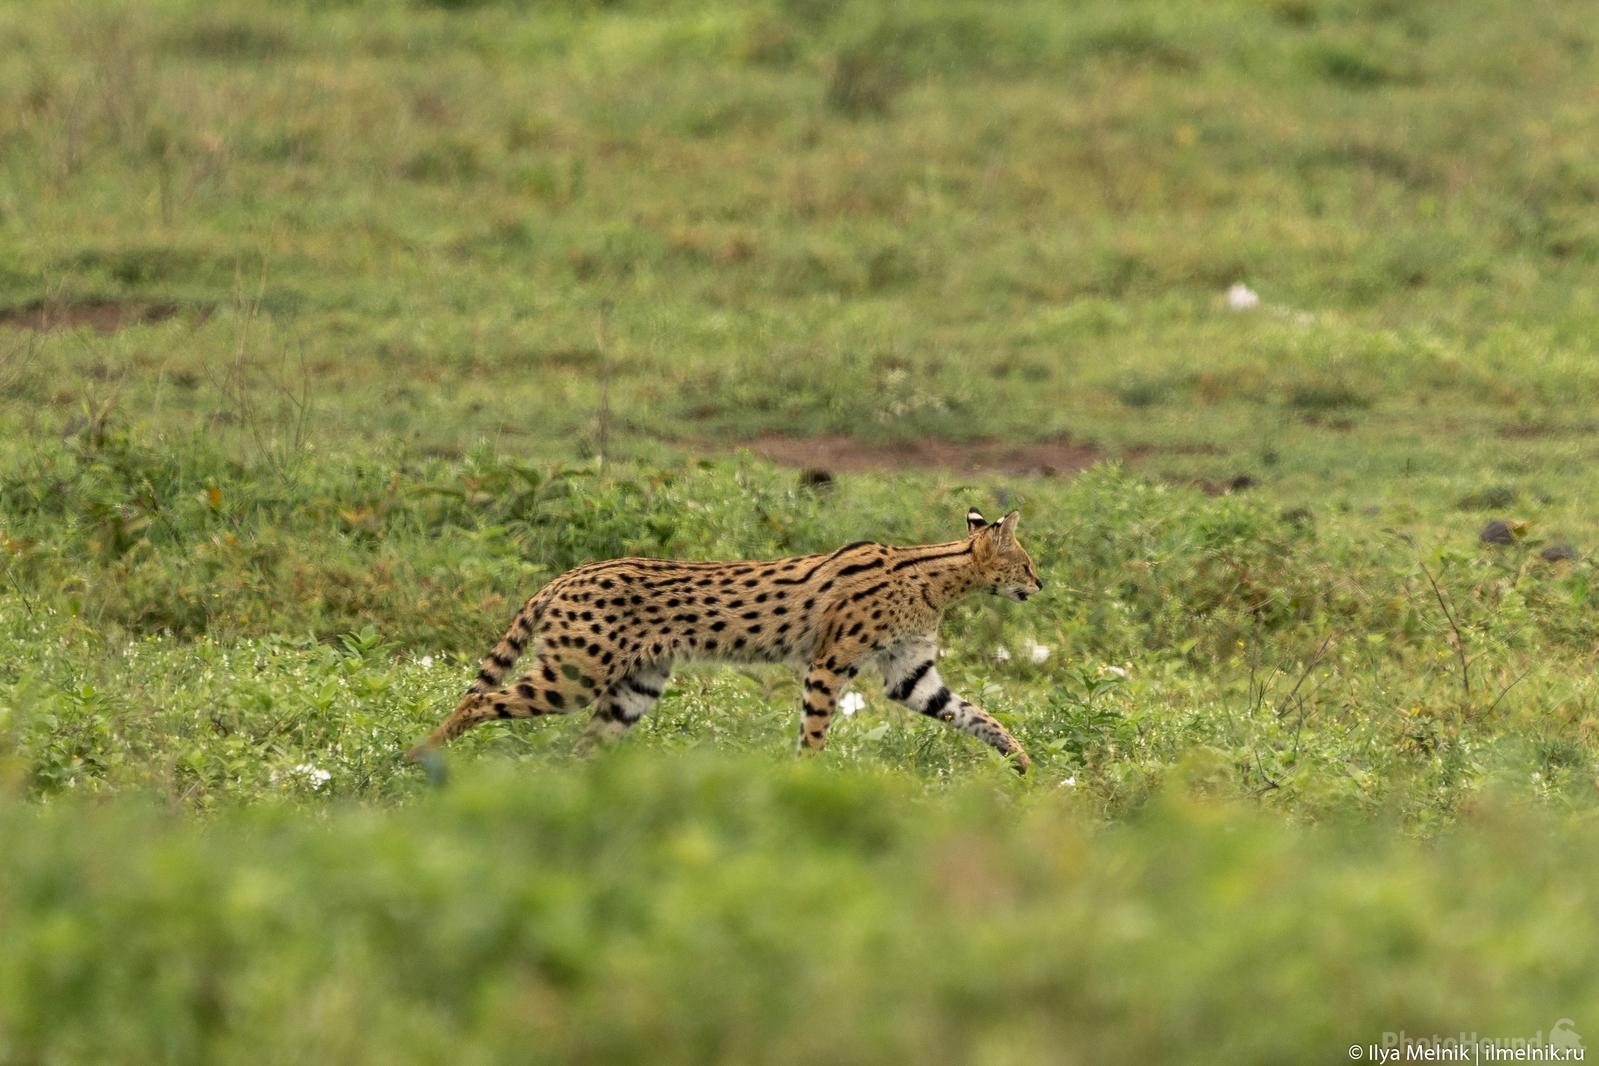 Image of Ngorongoro Caldera by Ilya Melnik